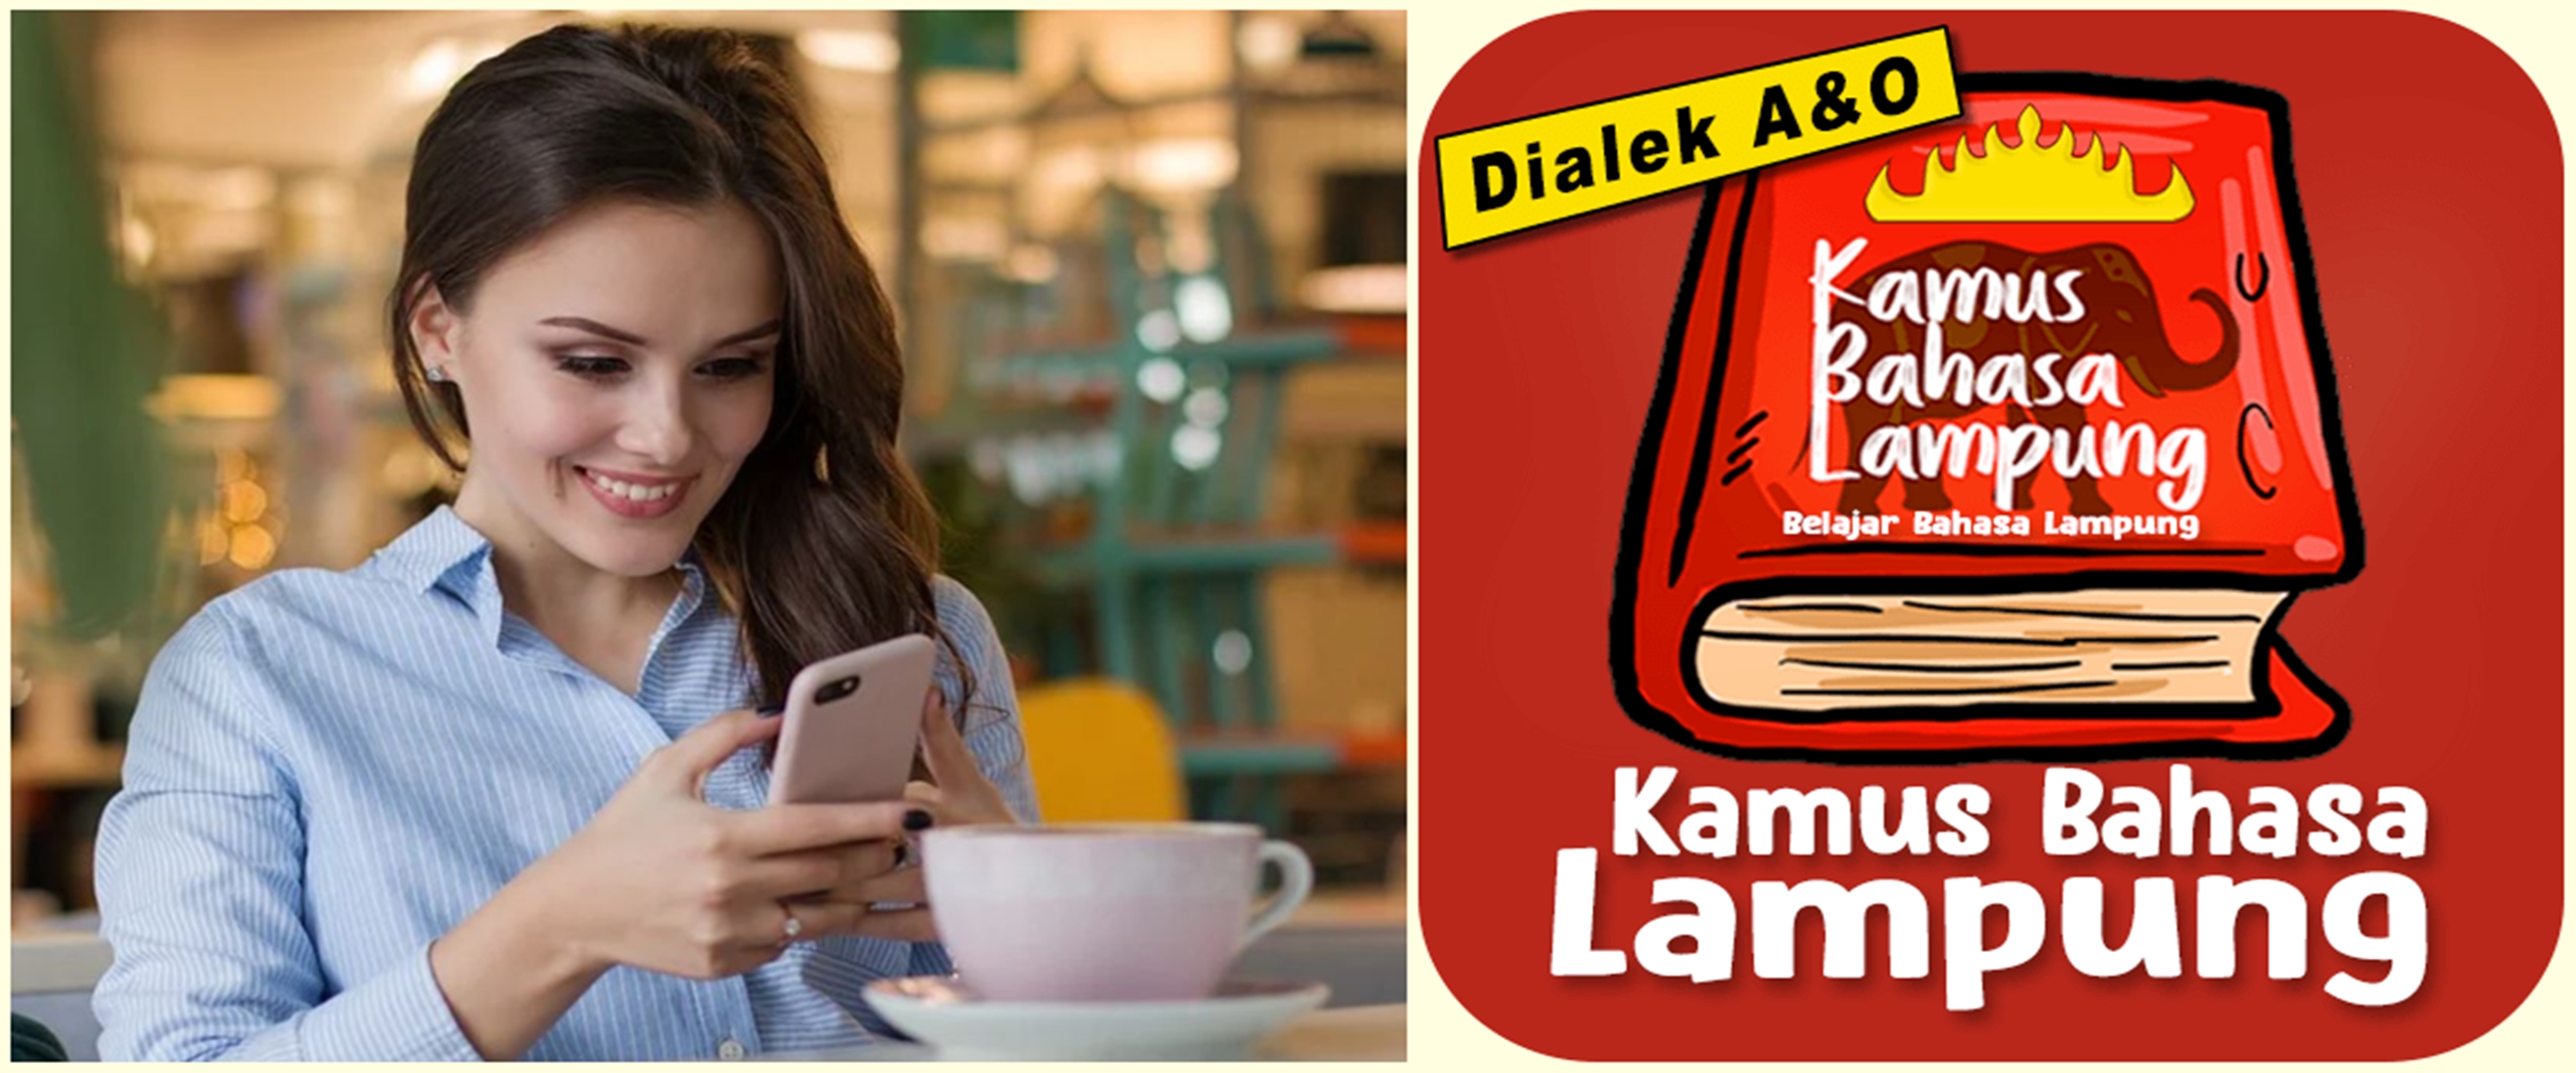 7 Aplikasi translate bahasa Lampung, gratis dan kosakata lengkap